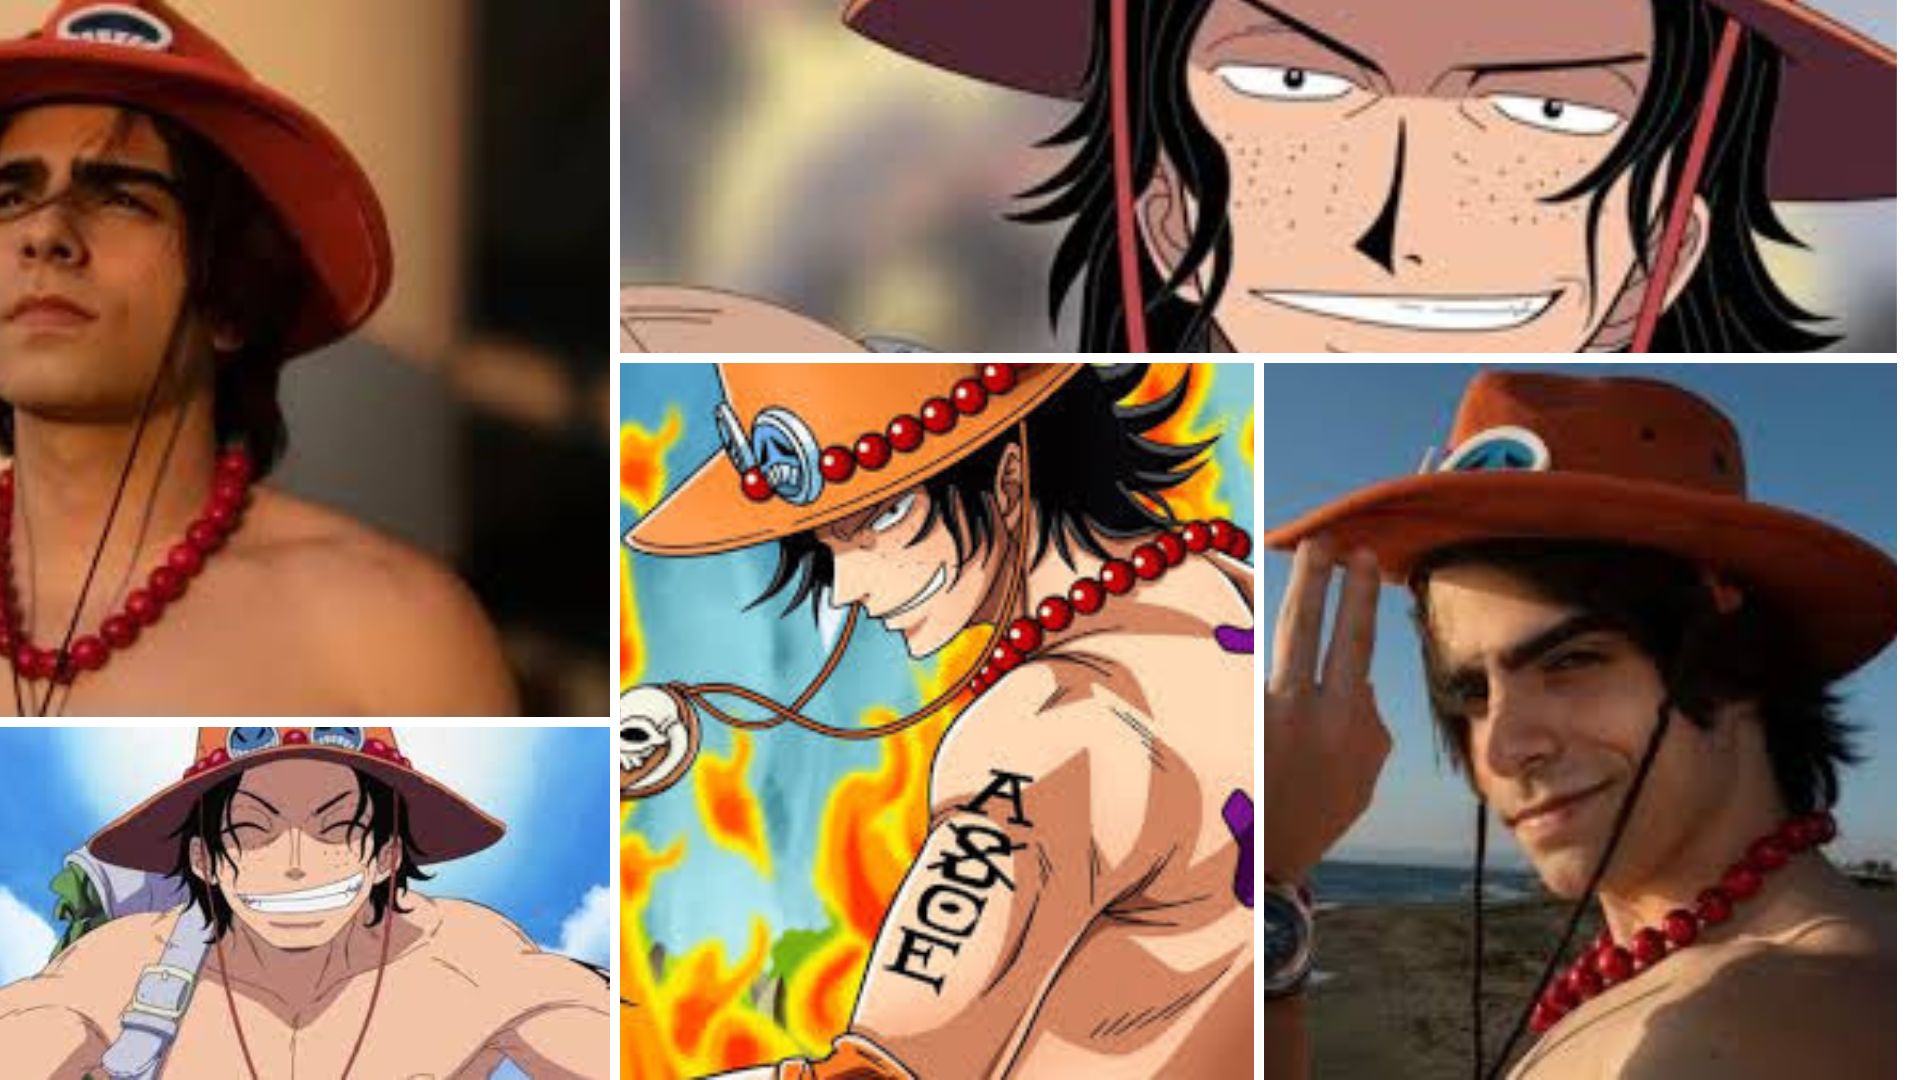 One Piece”: Netflix anuncia as datas de lançamento das próximas